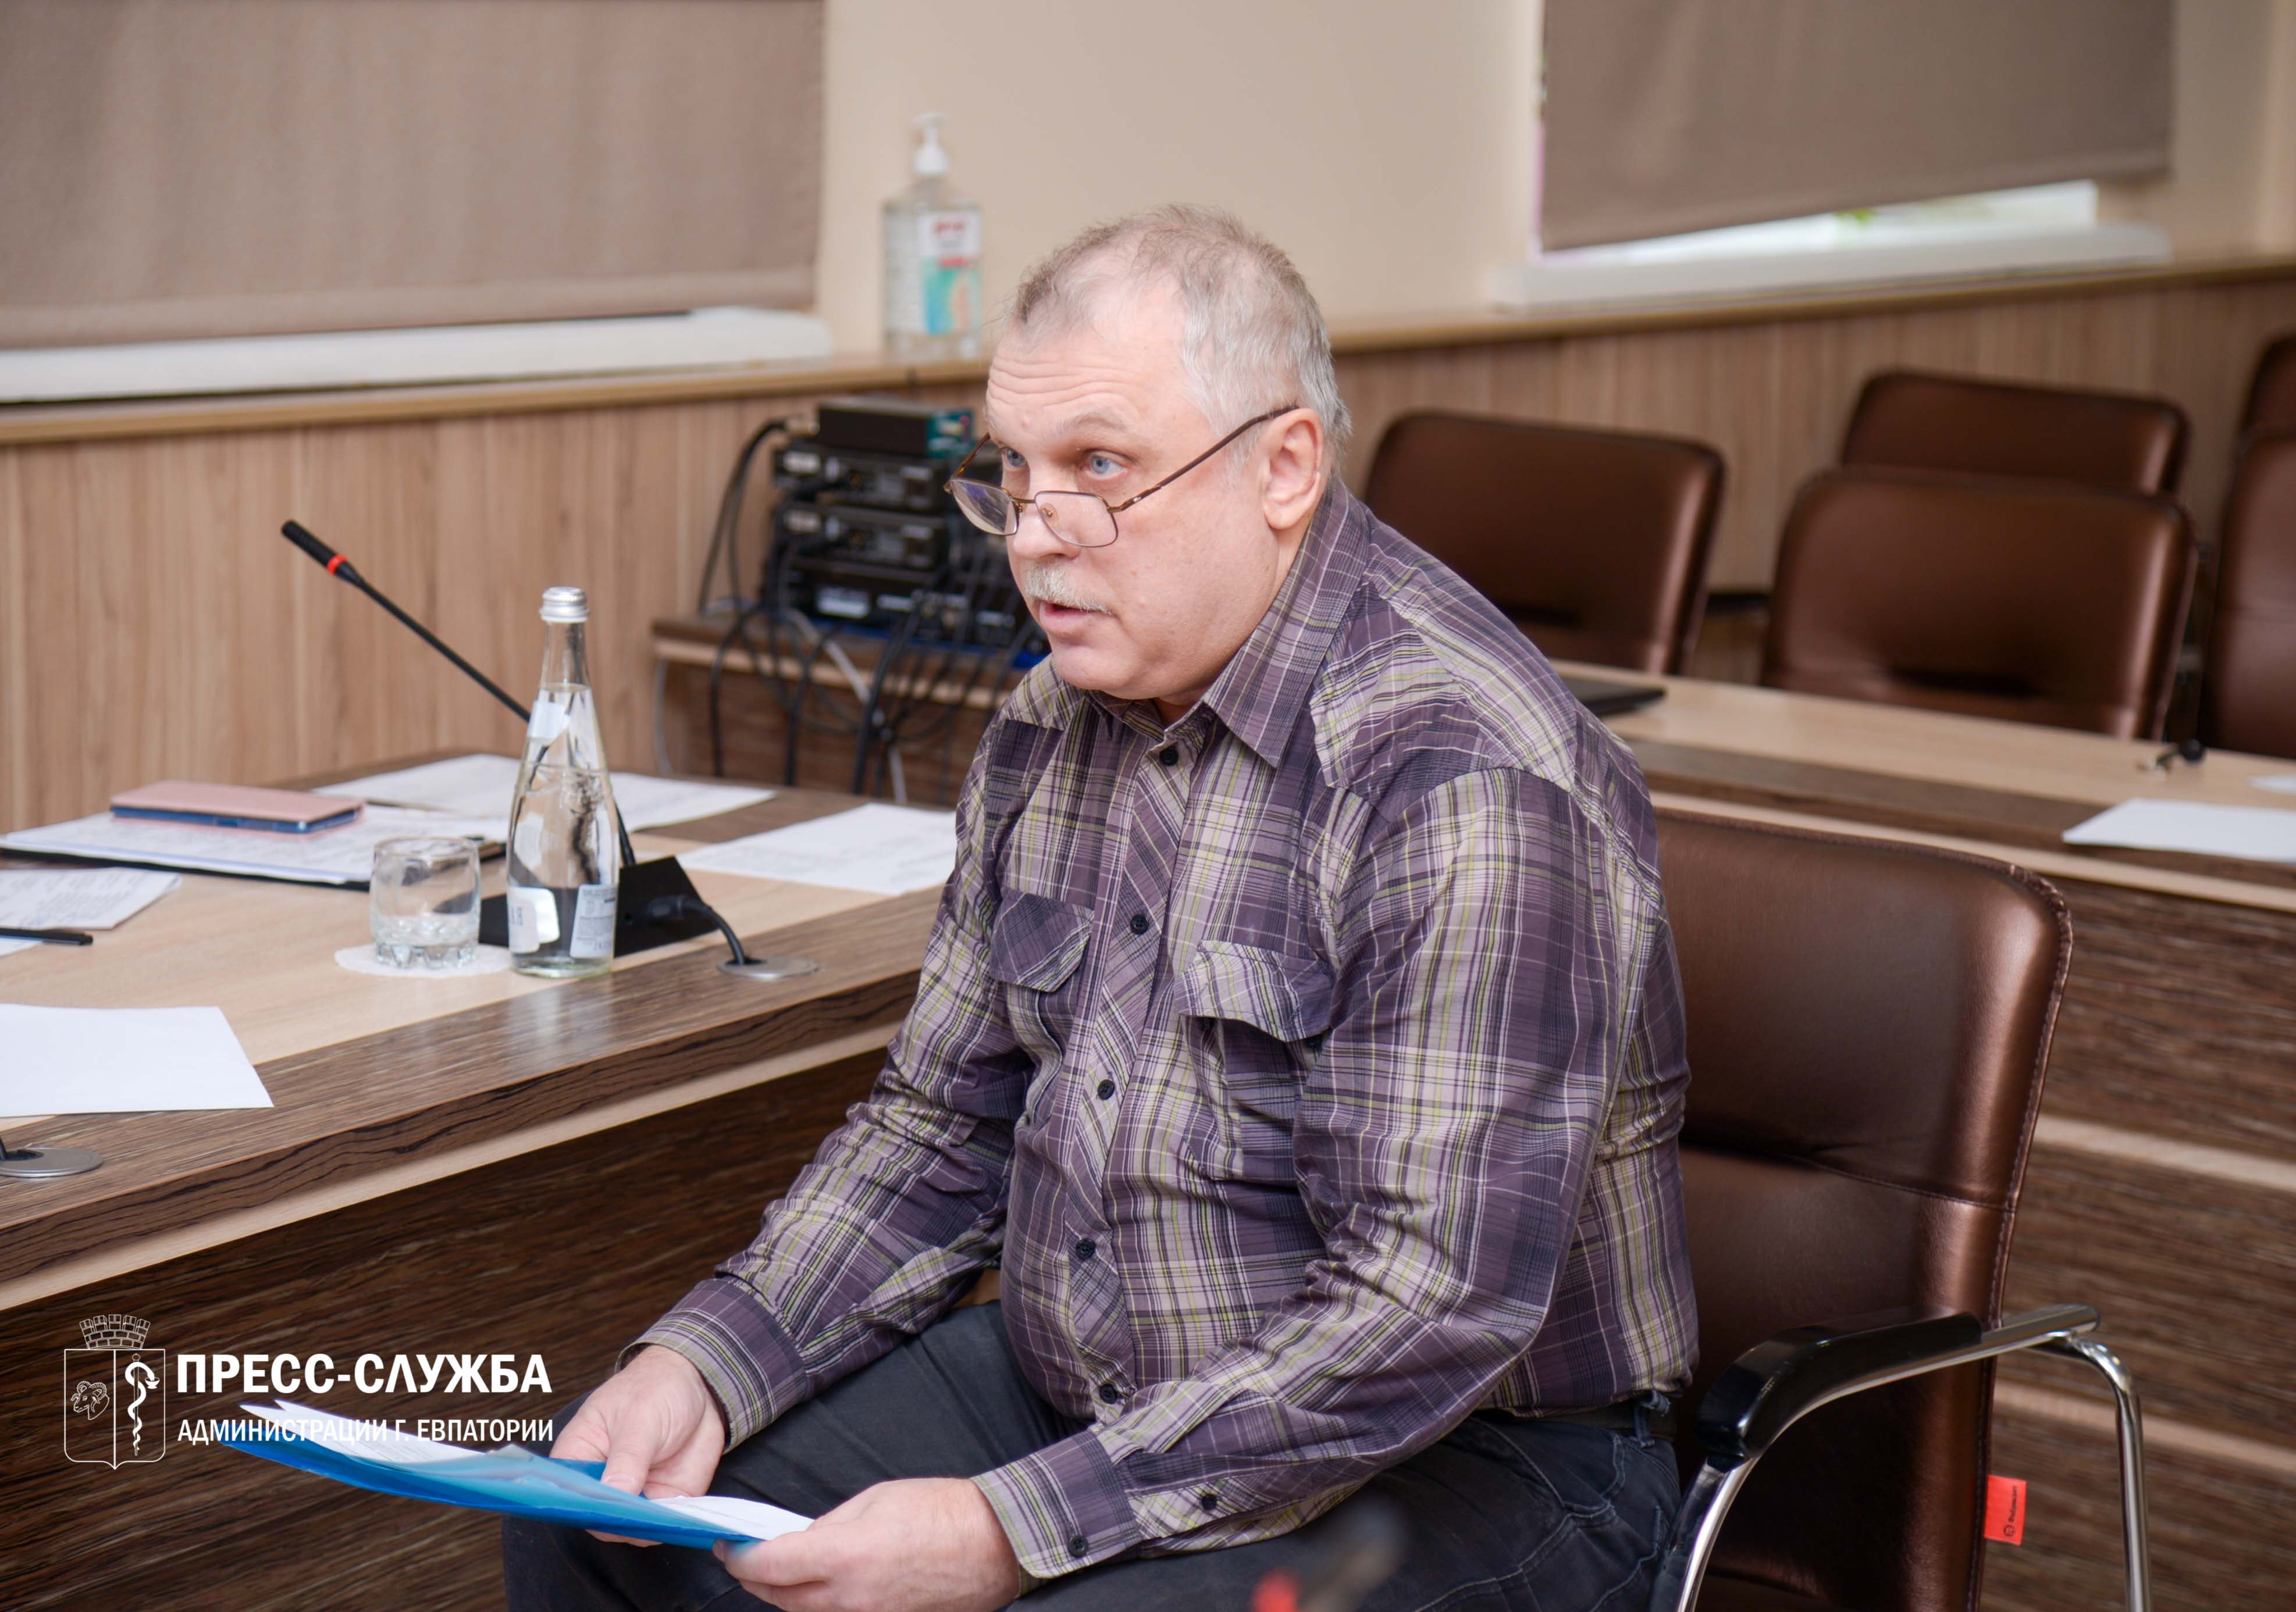 Депутат Госдумы Российской Федерации Михаил Шеремет провел прием граждан в Евпатории 